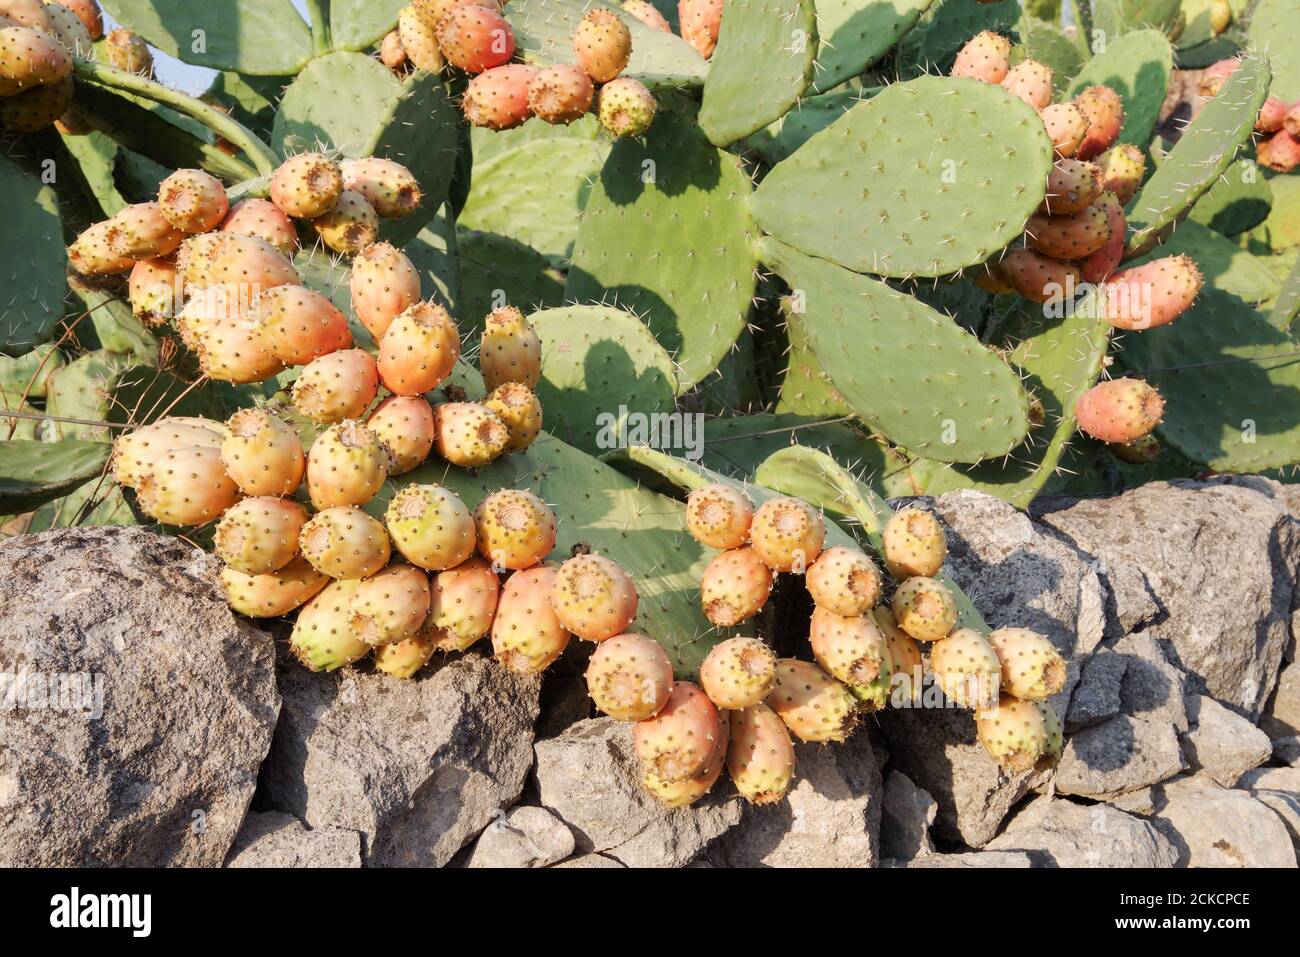 Pere siciliane di ceci in forte crescita (opuntia ficus indica) che pesano con frutta (regione noto, Sicilia, Italia) Foto Stock